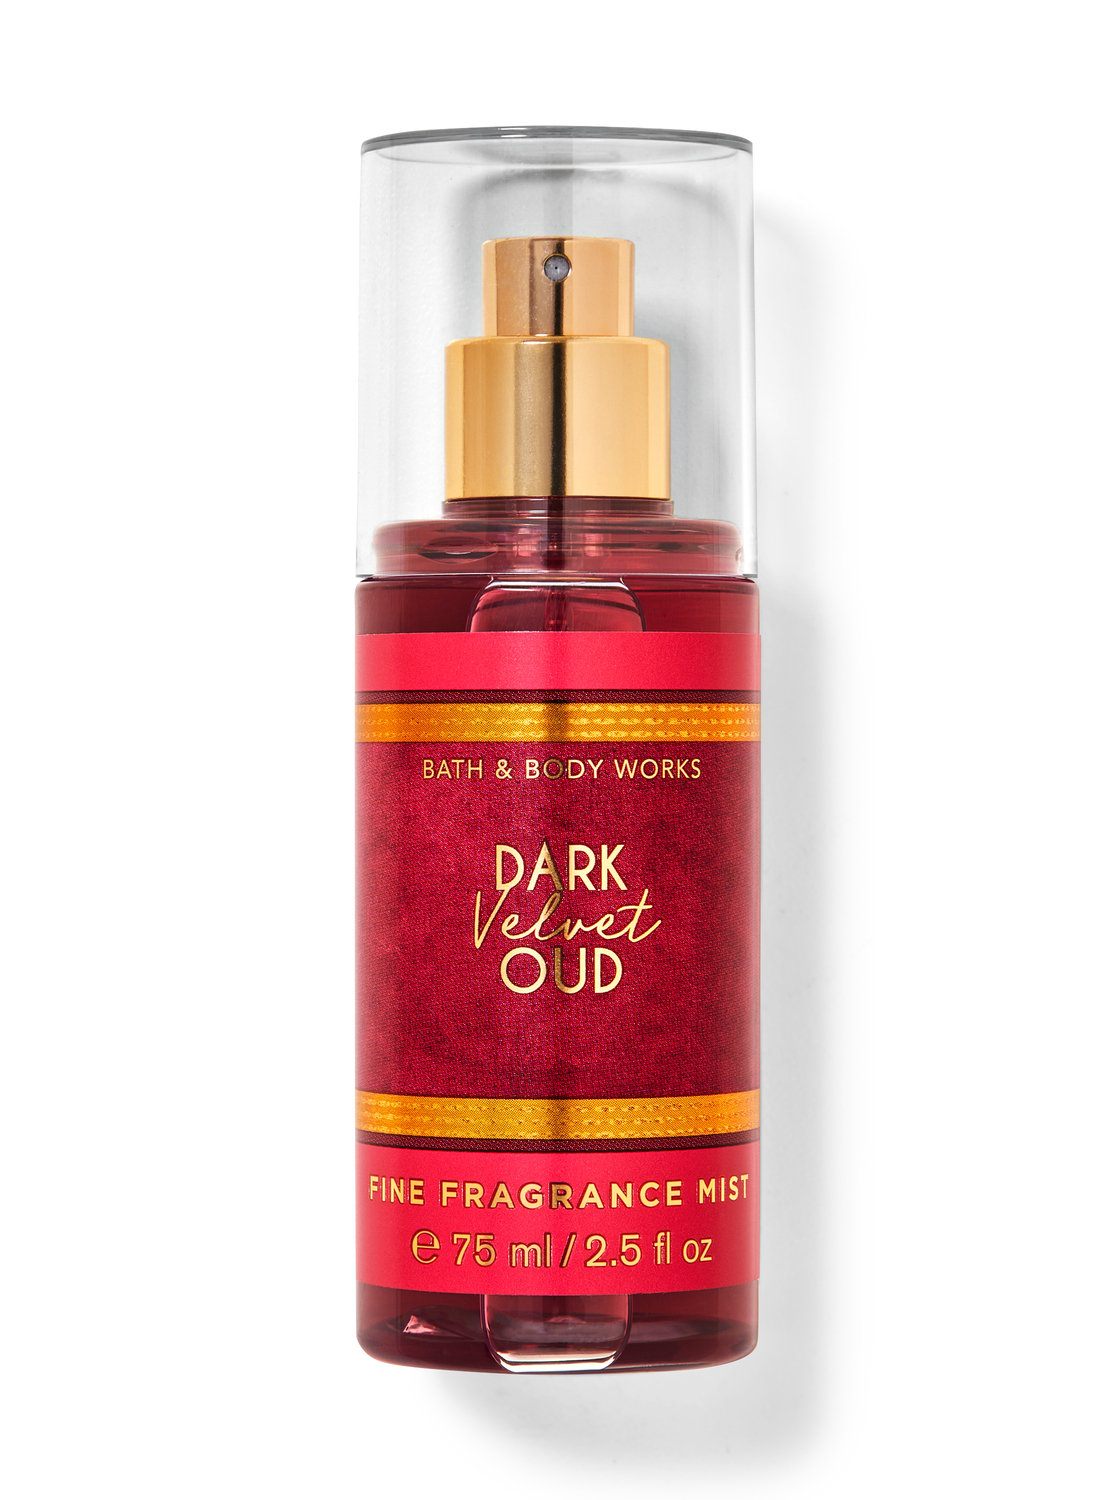 Dark Velvet Oud Travel Size Fine Fragrance Mist from Bath & Body Works